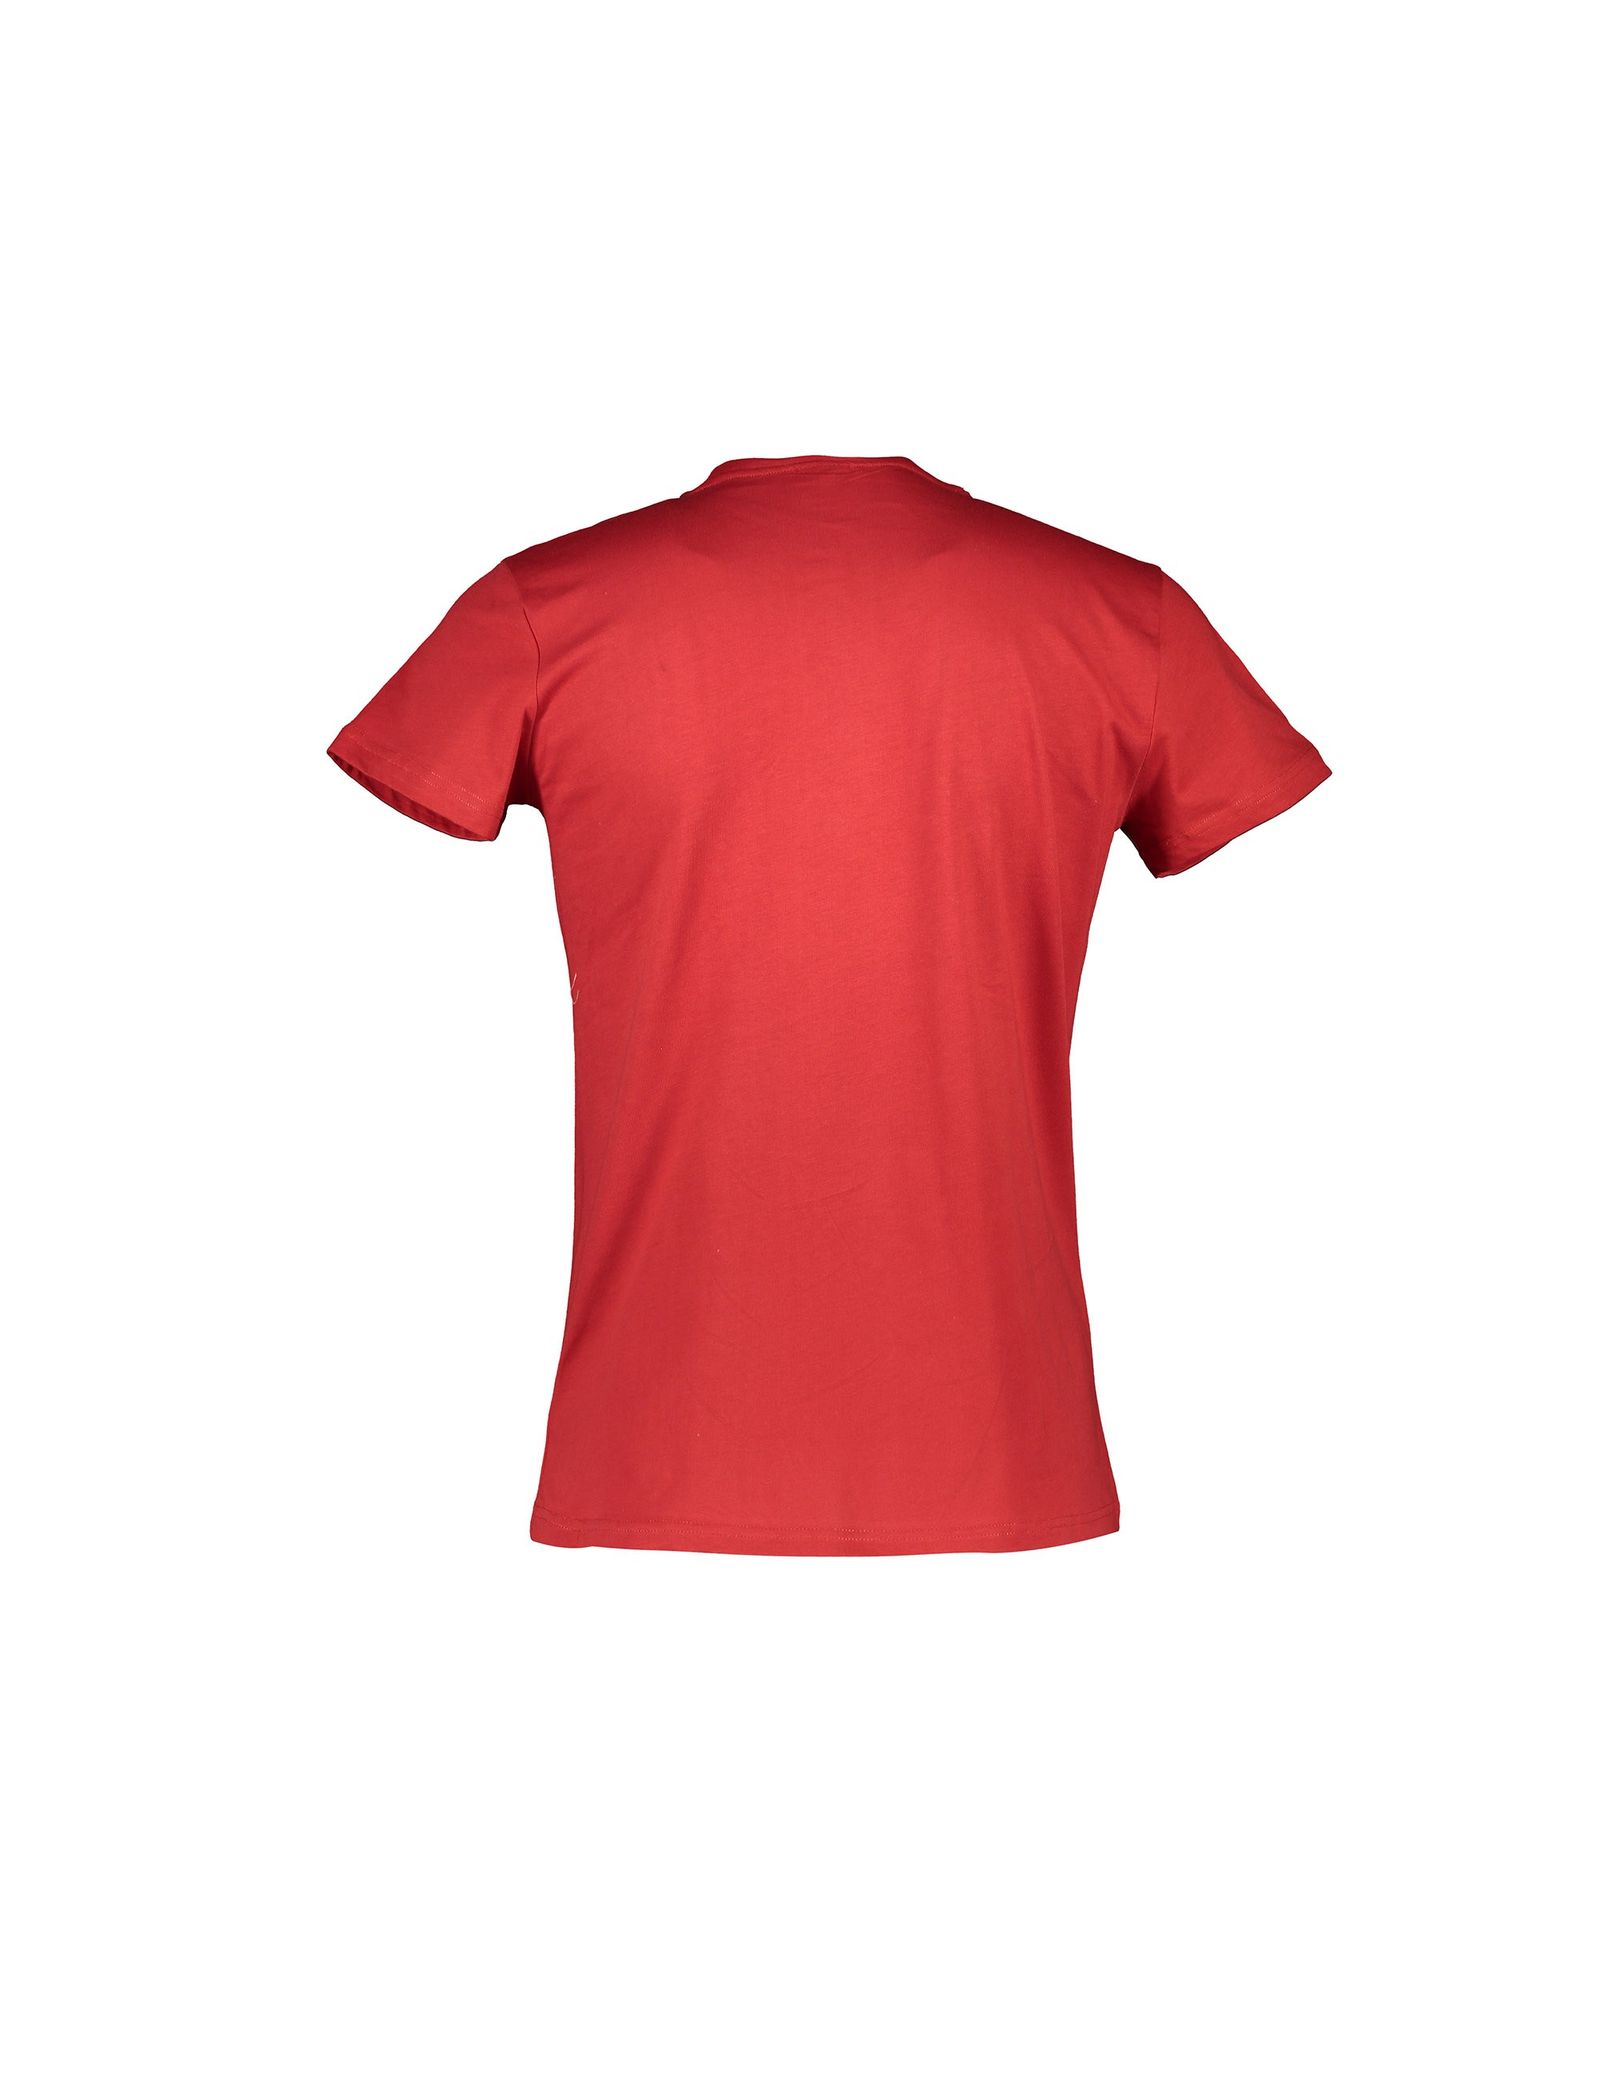 تی شرت و شلوارک نخی مردانه - یوپیم - طوسي , قرمز - 4